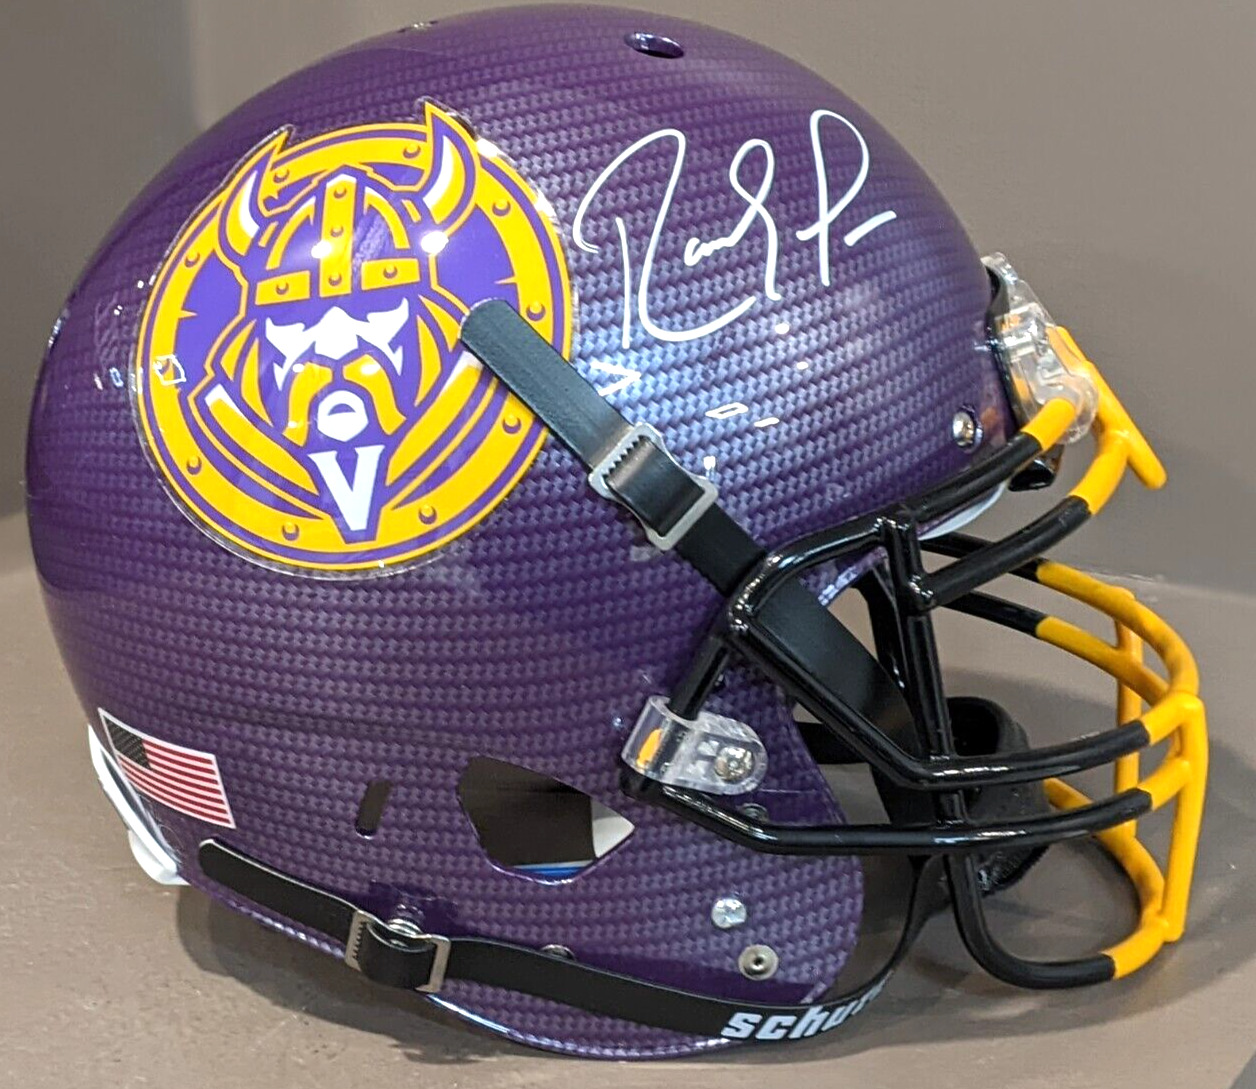 Randy Moss Signed Full Size Carbon Fiber Vikings Helmet (JSA)